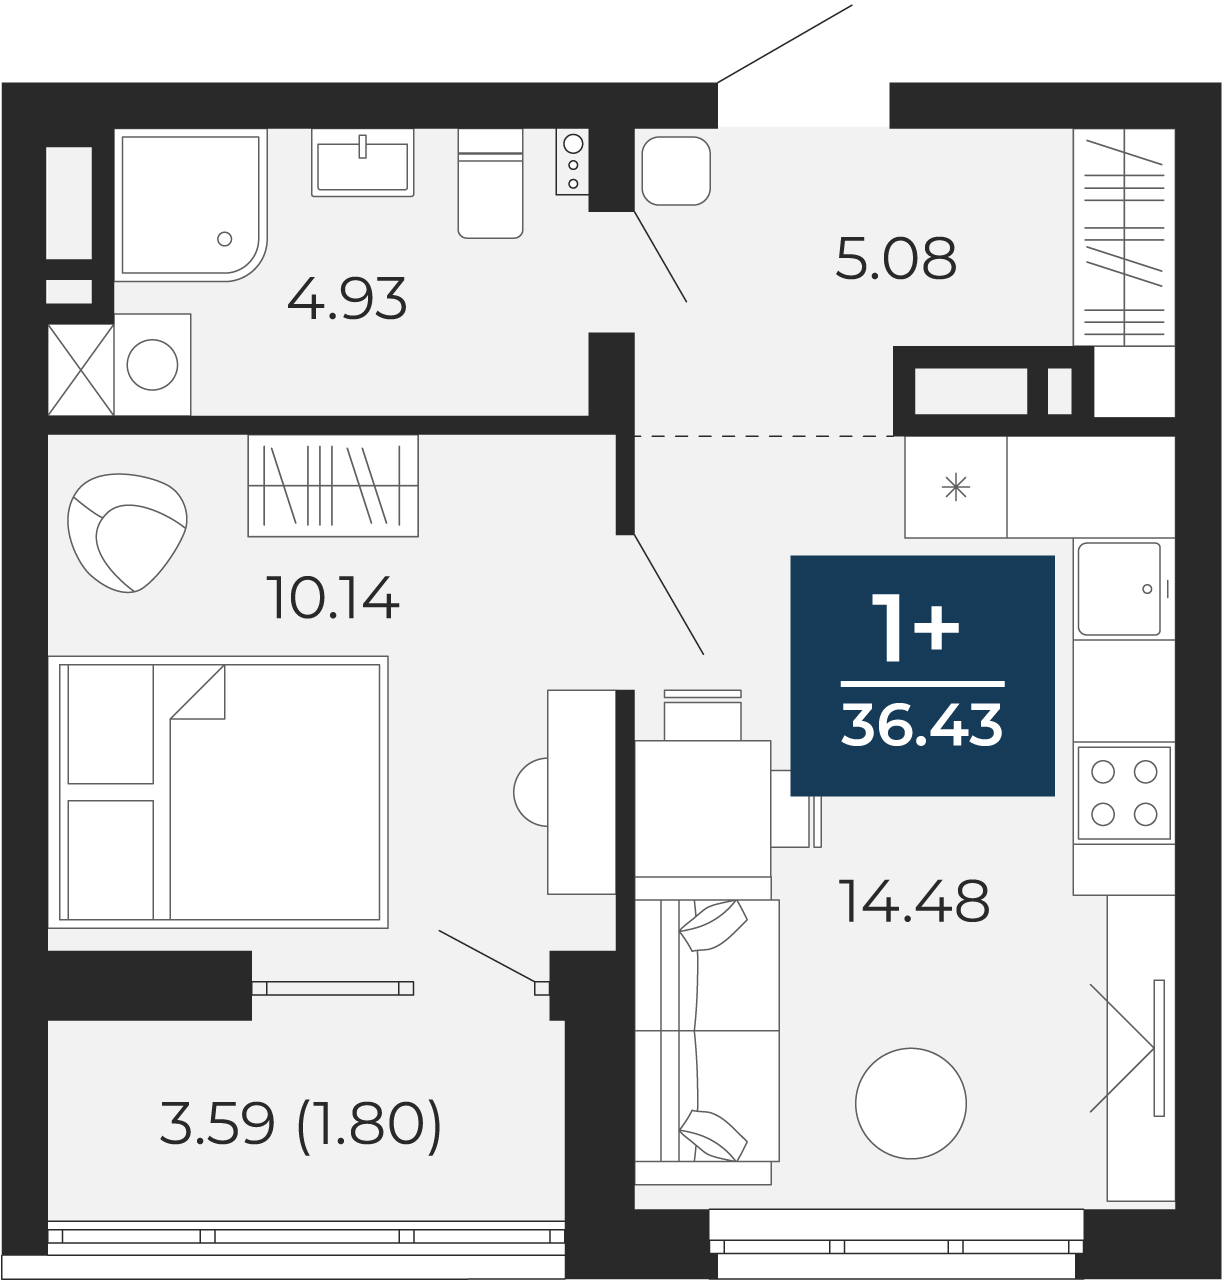 Квартира № 196, 1-комнатная, 36.43 кв. м, 3 этаж